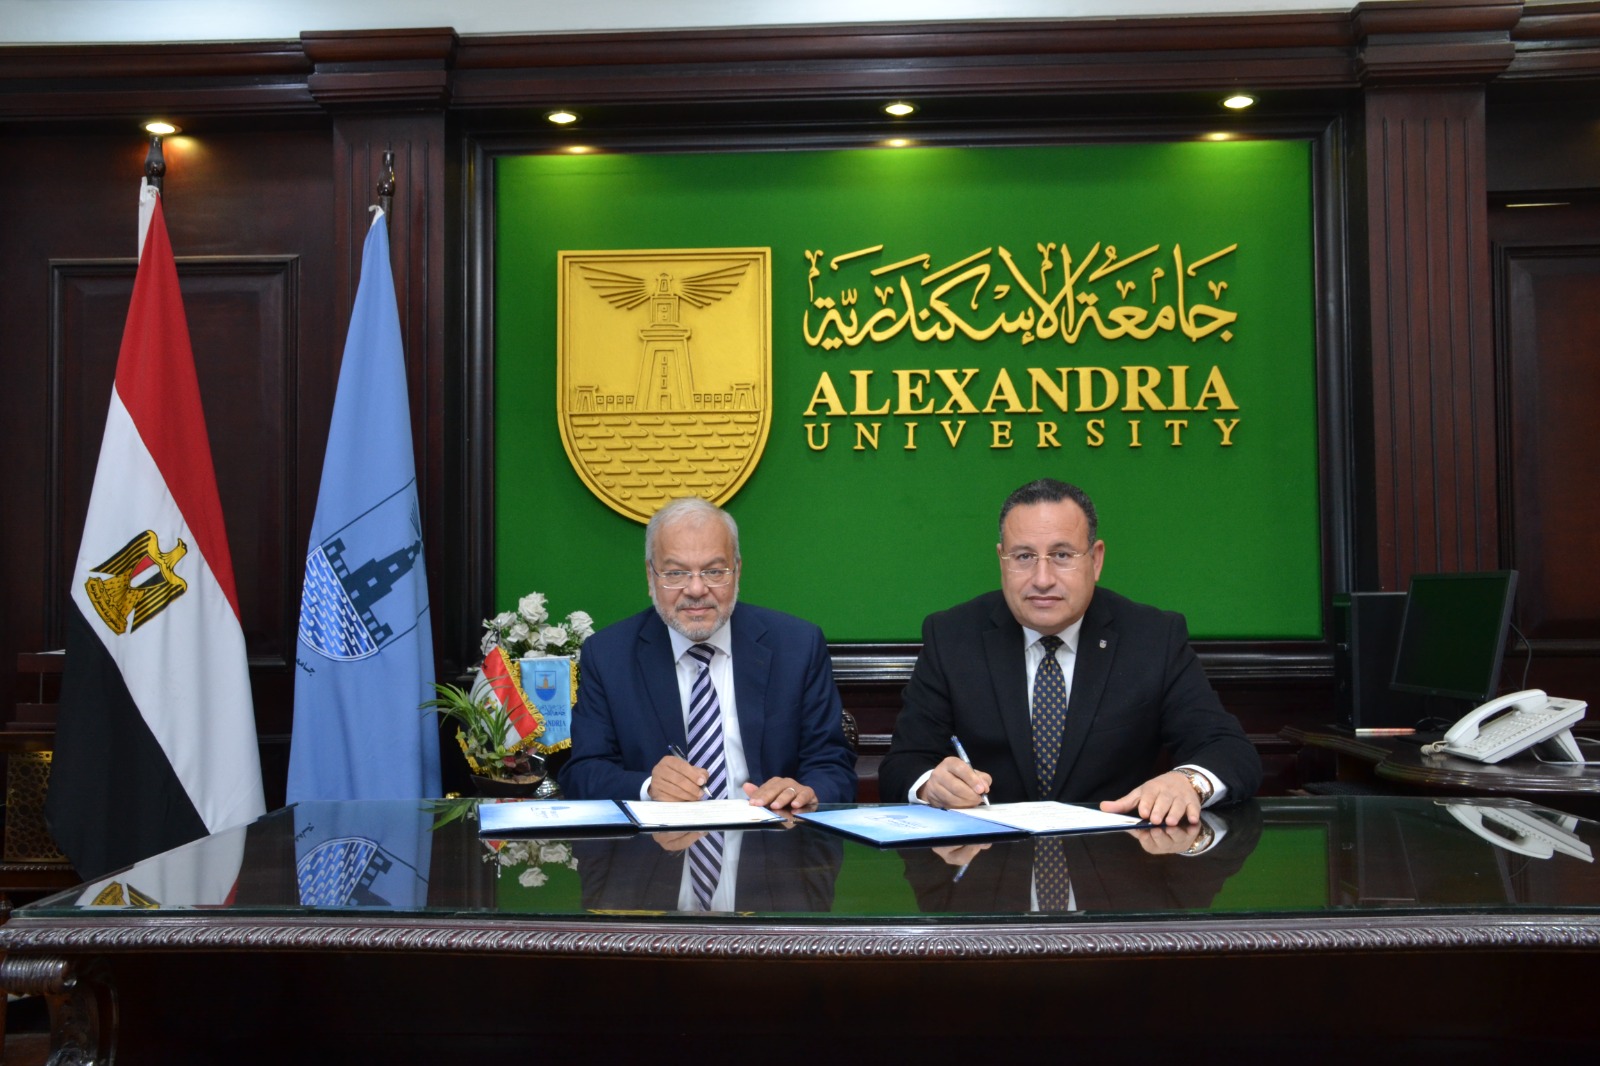  اتفاقية تعاون بين جامعة الإسكندرية وجامعة فاروس